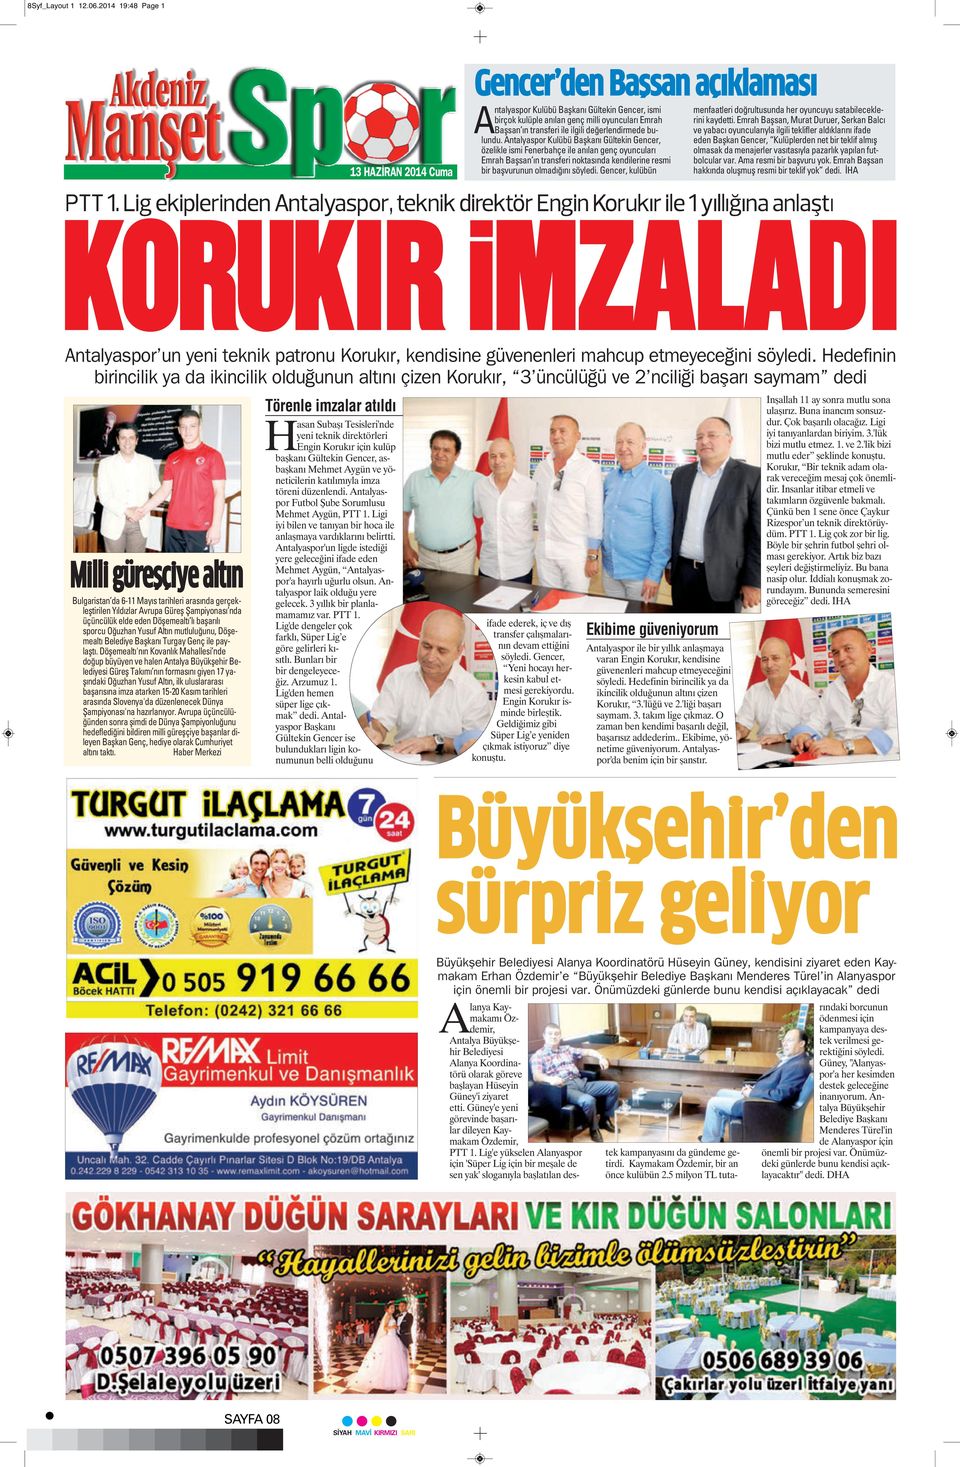 töreni düzenlendi. Antalyaspor Futbol Şube Sorumlusu Mehmet Aygün, PTT 1. Ligi iyi bilen ve tanıyan bir hoca ile anlaşmaya vardıklarını belirtti.